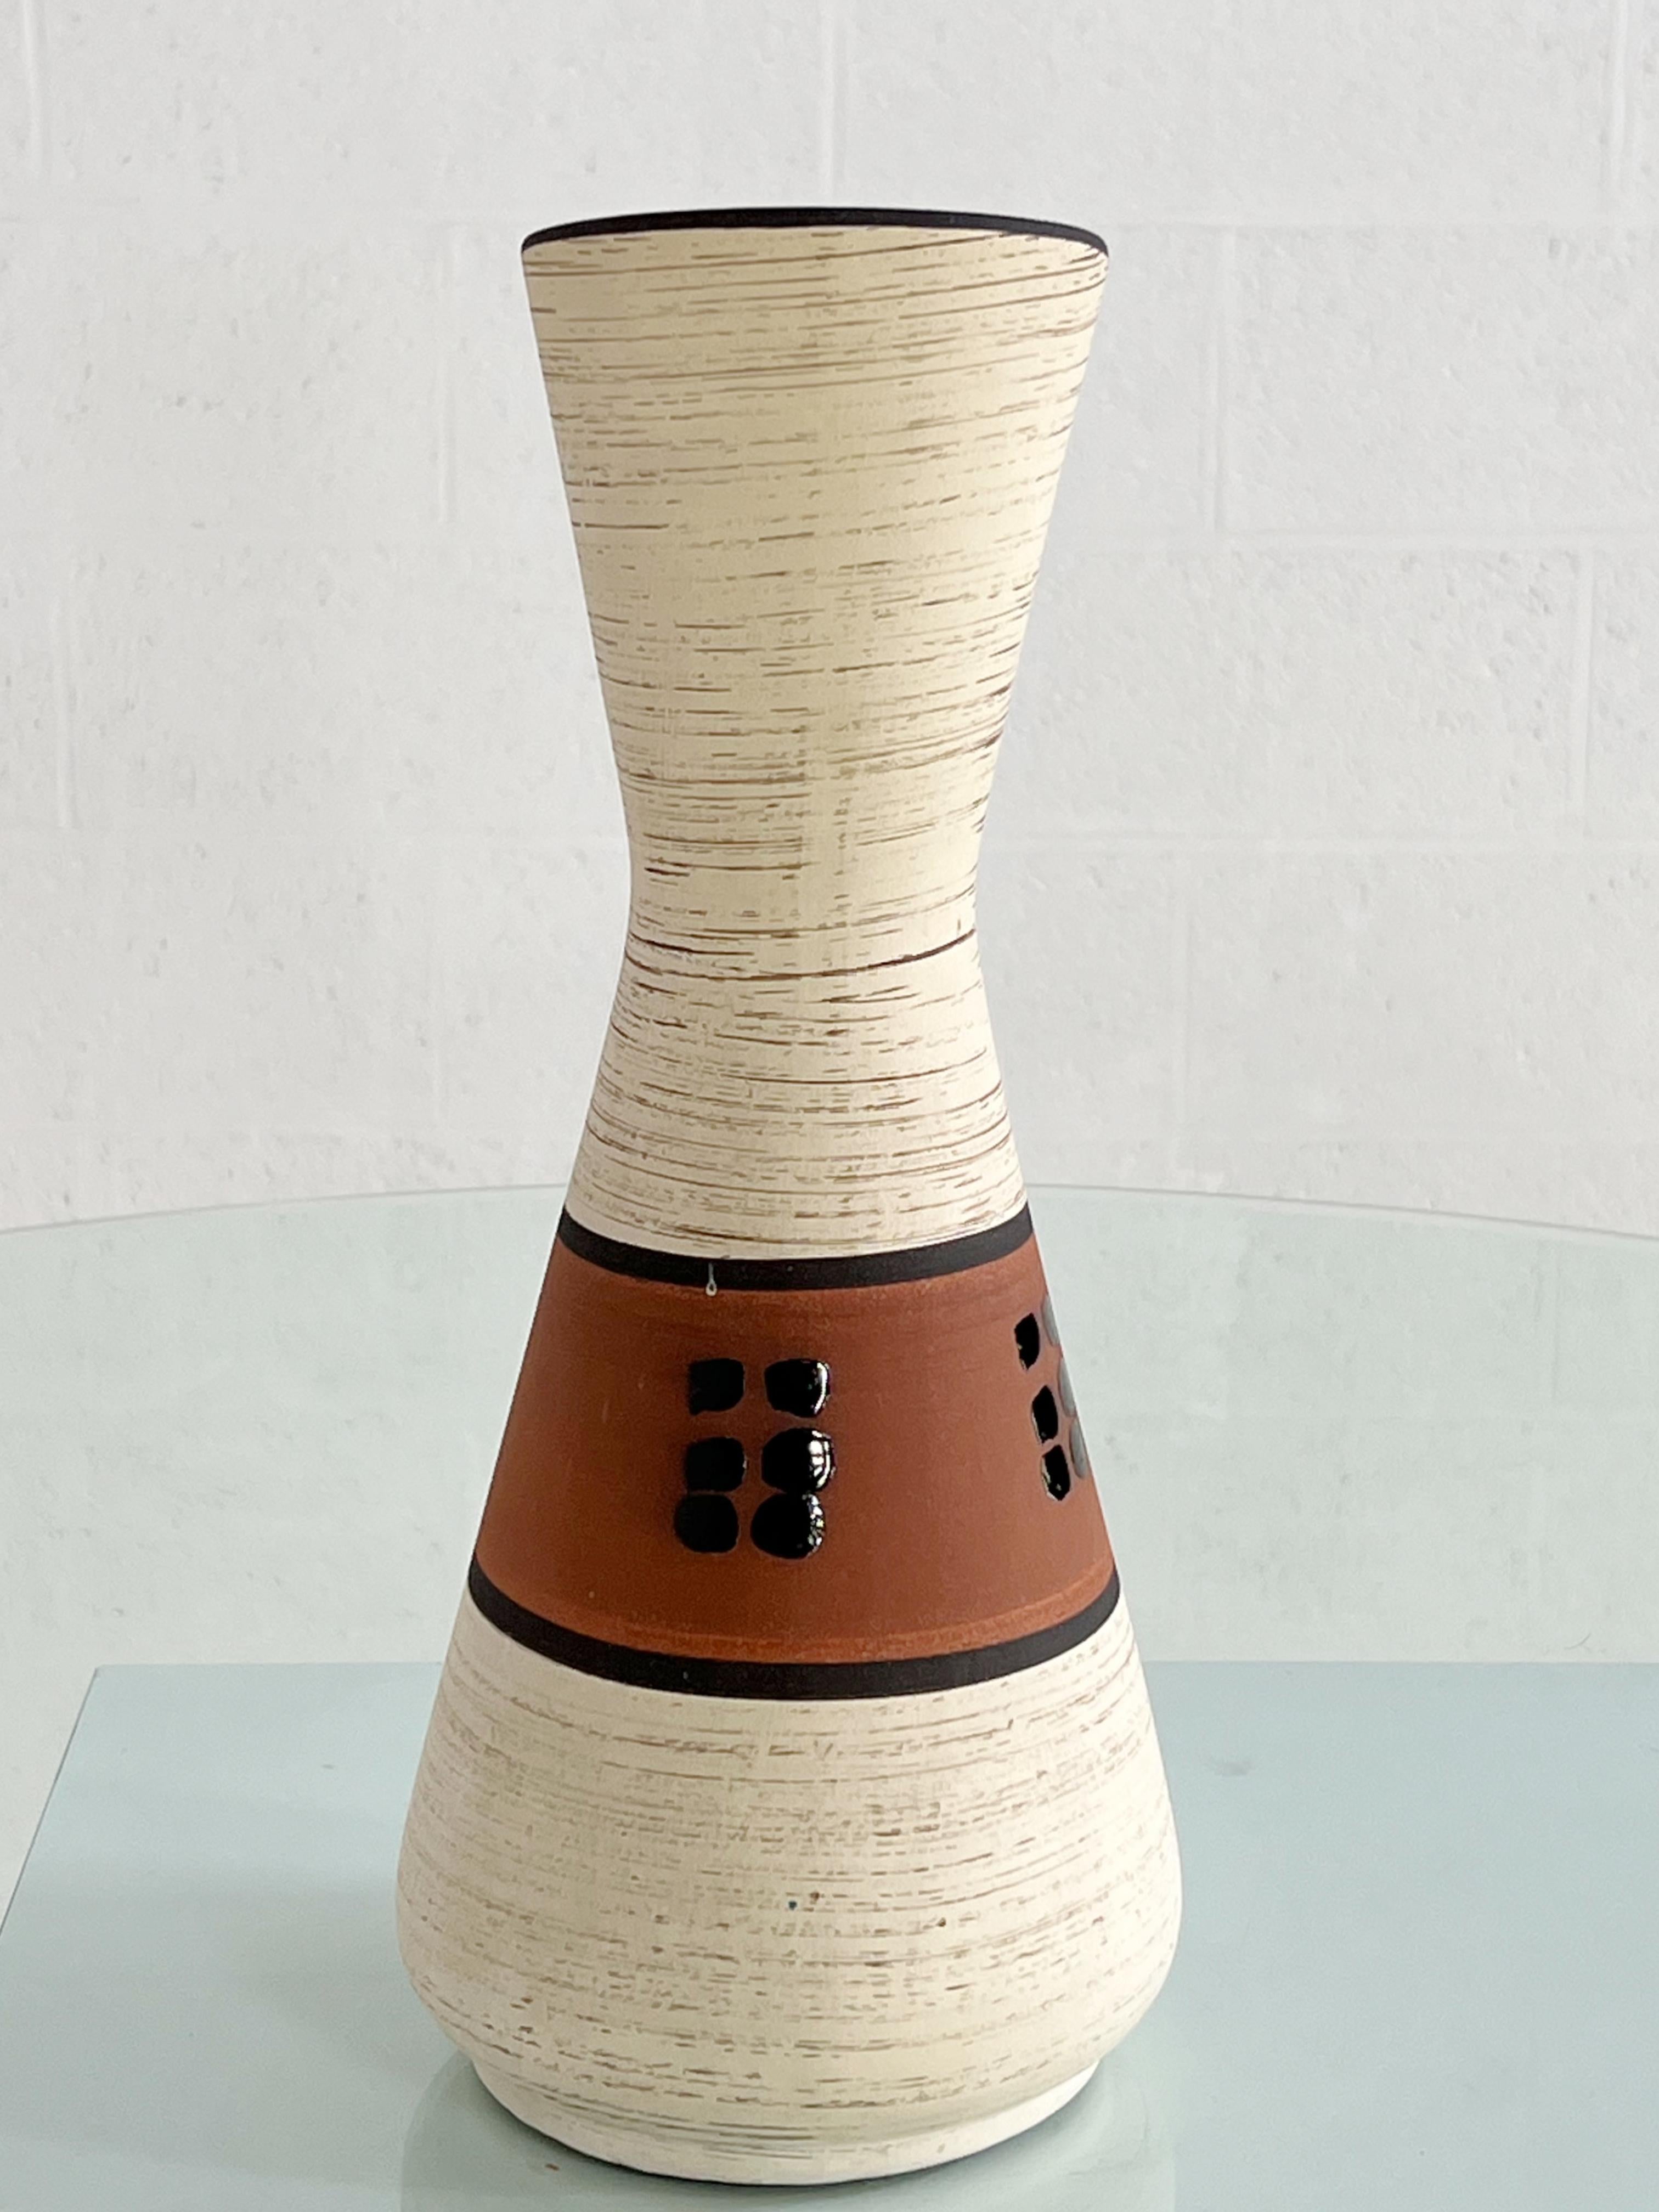 Vase pichet en céramique fait à la main dans les années 1960 avec des couleurs beige, noir et marron à l'extérieur et une belle glaçure turquoise à l'intérieur.